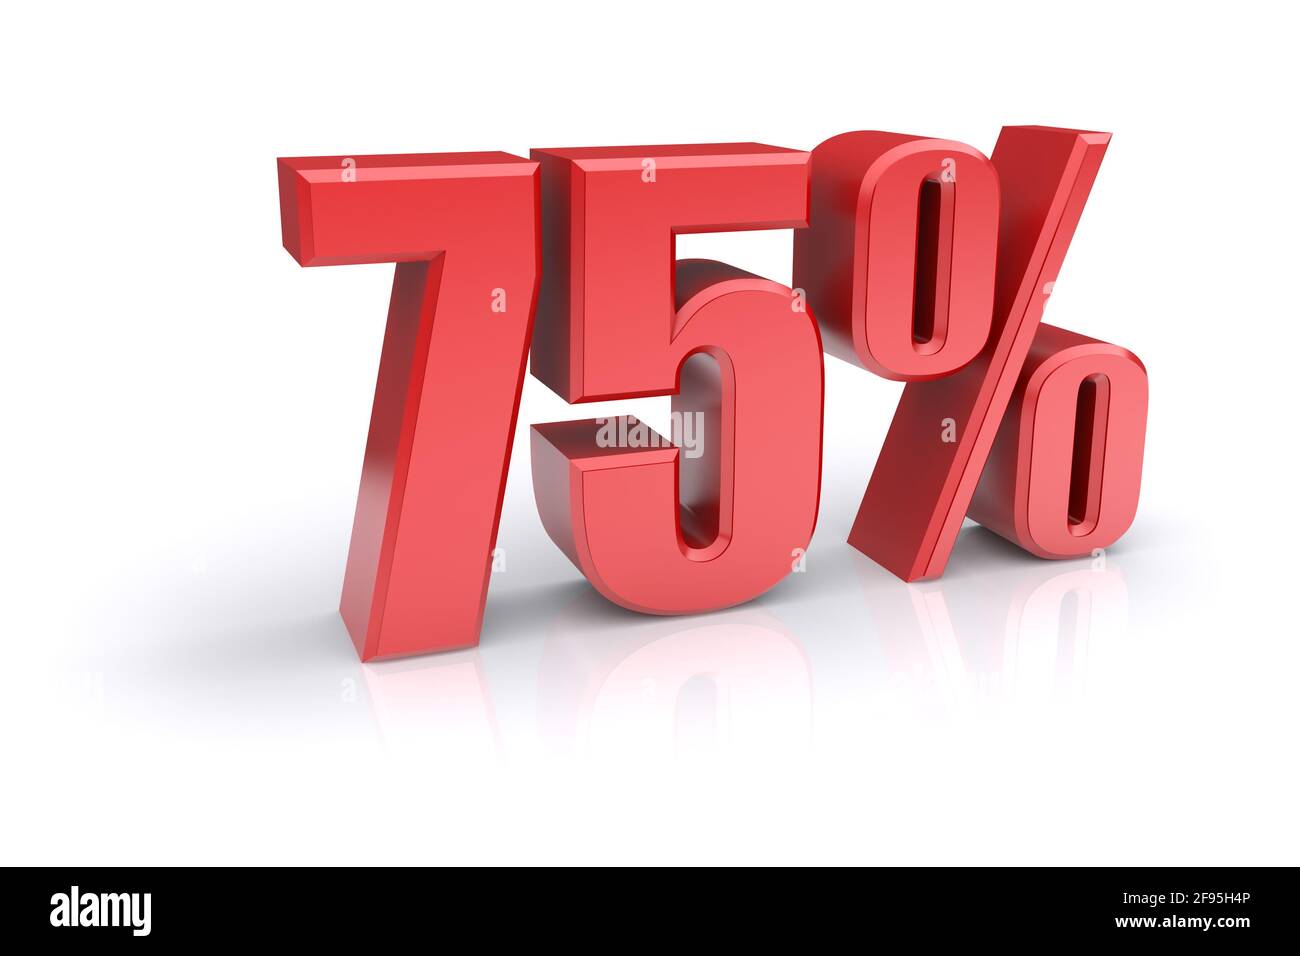 Icona rossa del tasso percentuale del 75% su sfondo bianco. immagine 3d rappresentata Foto Stock